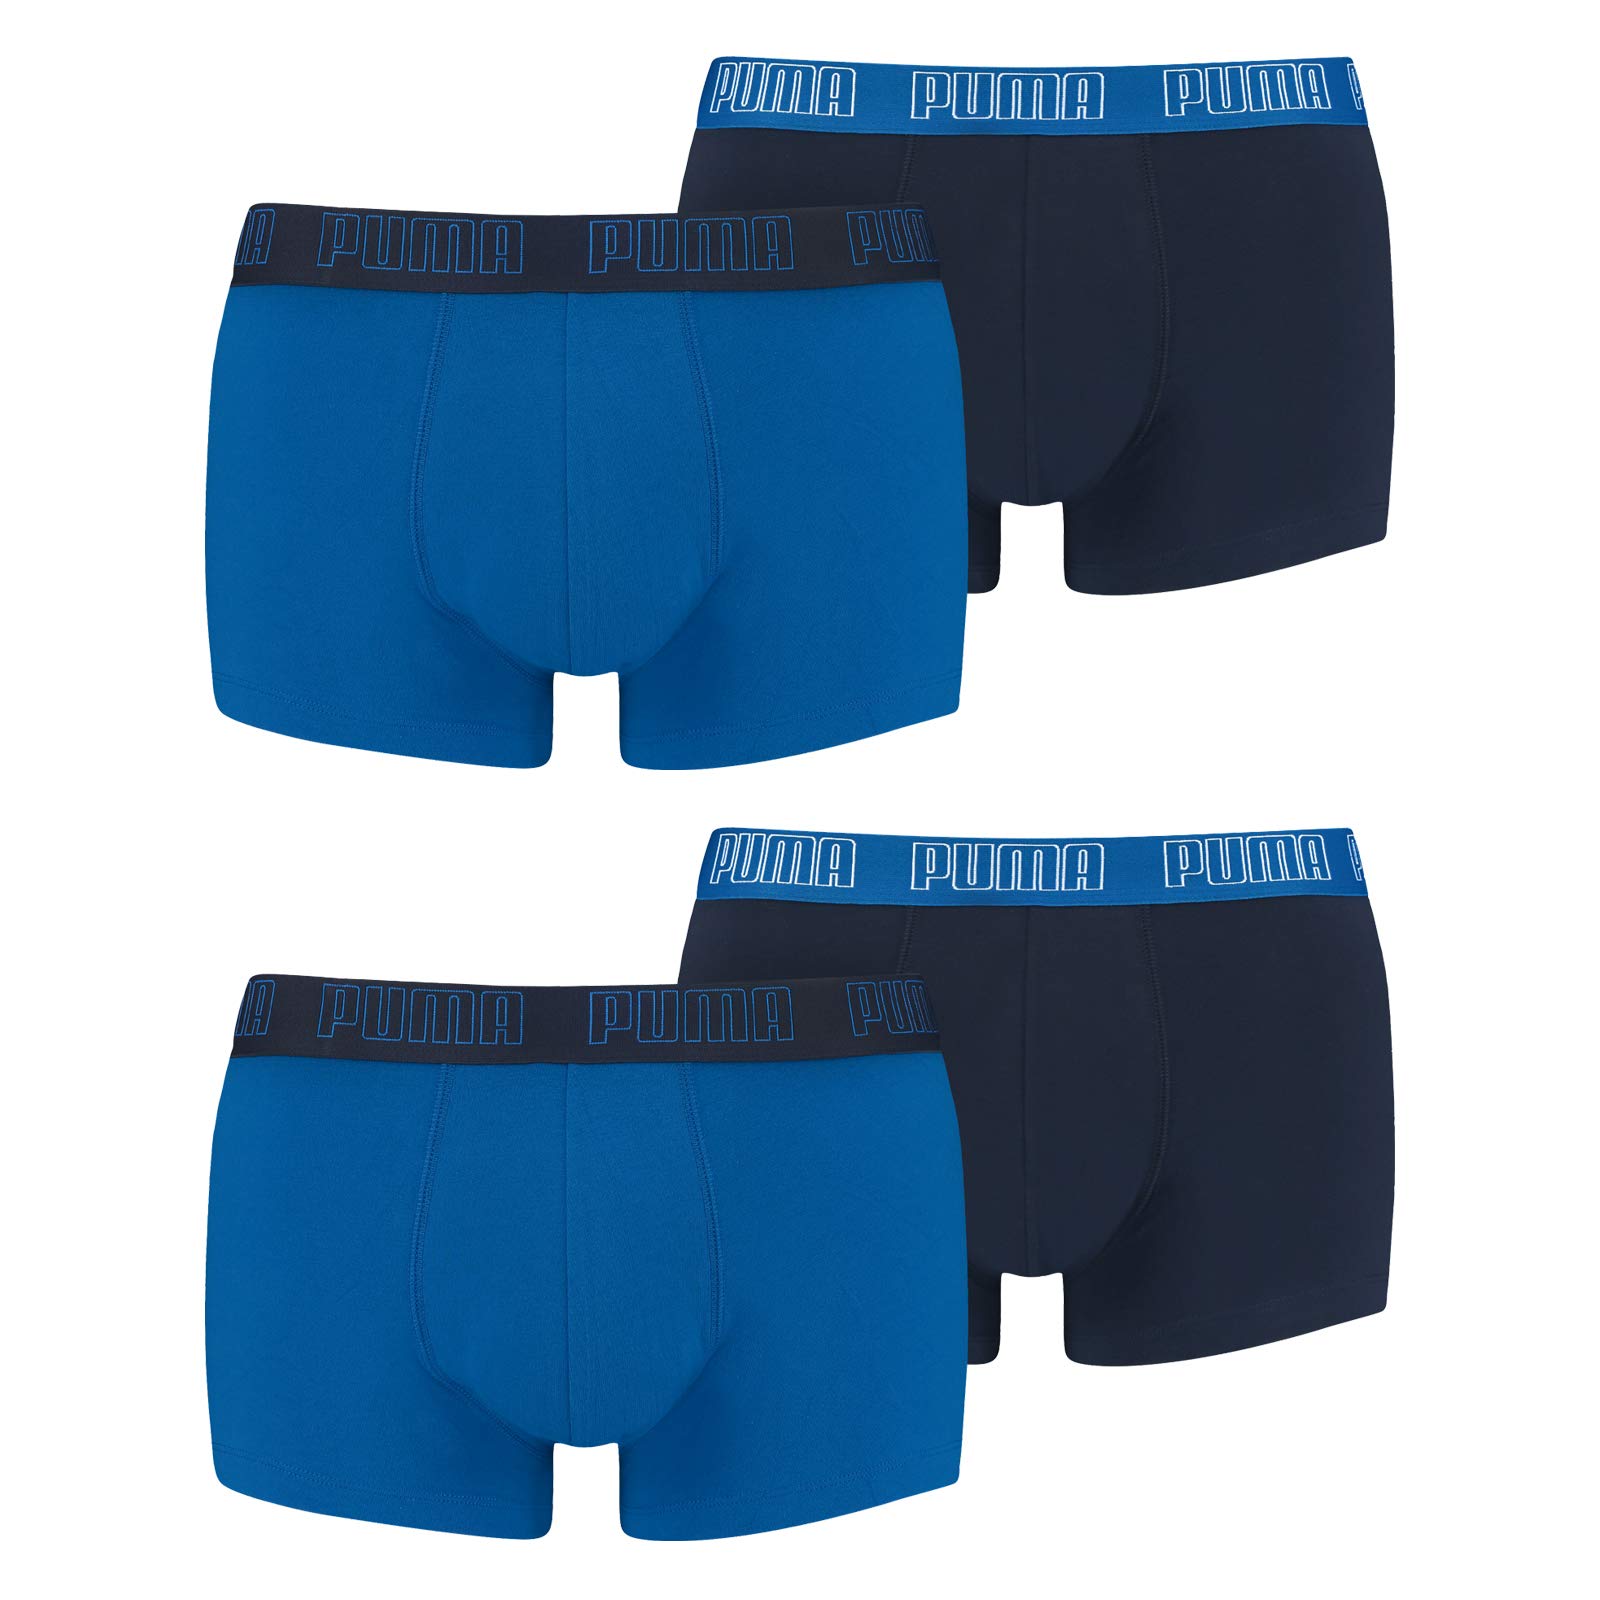 PUMA Herren Shortboxer Unterhosen Trunks 4er Pack, Wäschegröße:M, Artikel:-003 True Blue